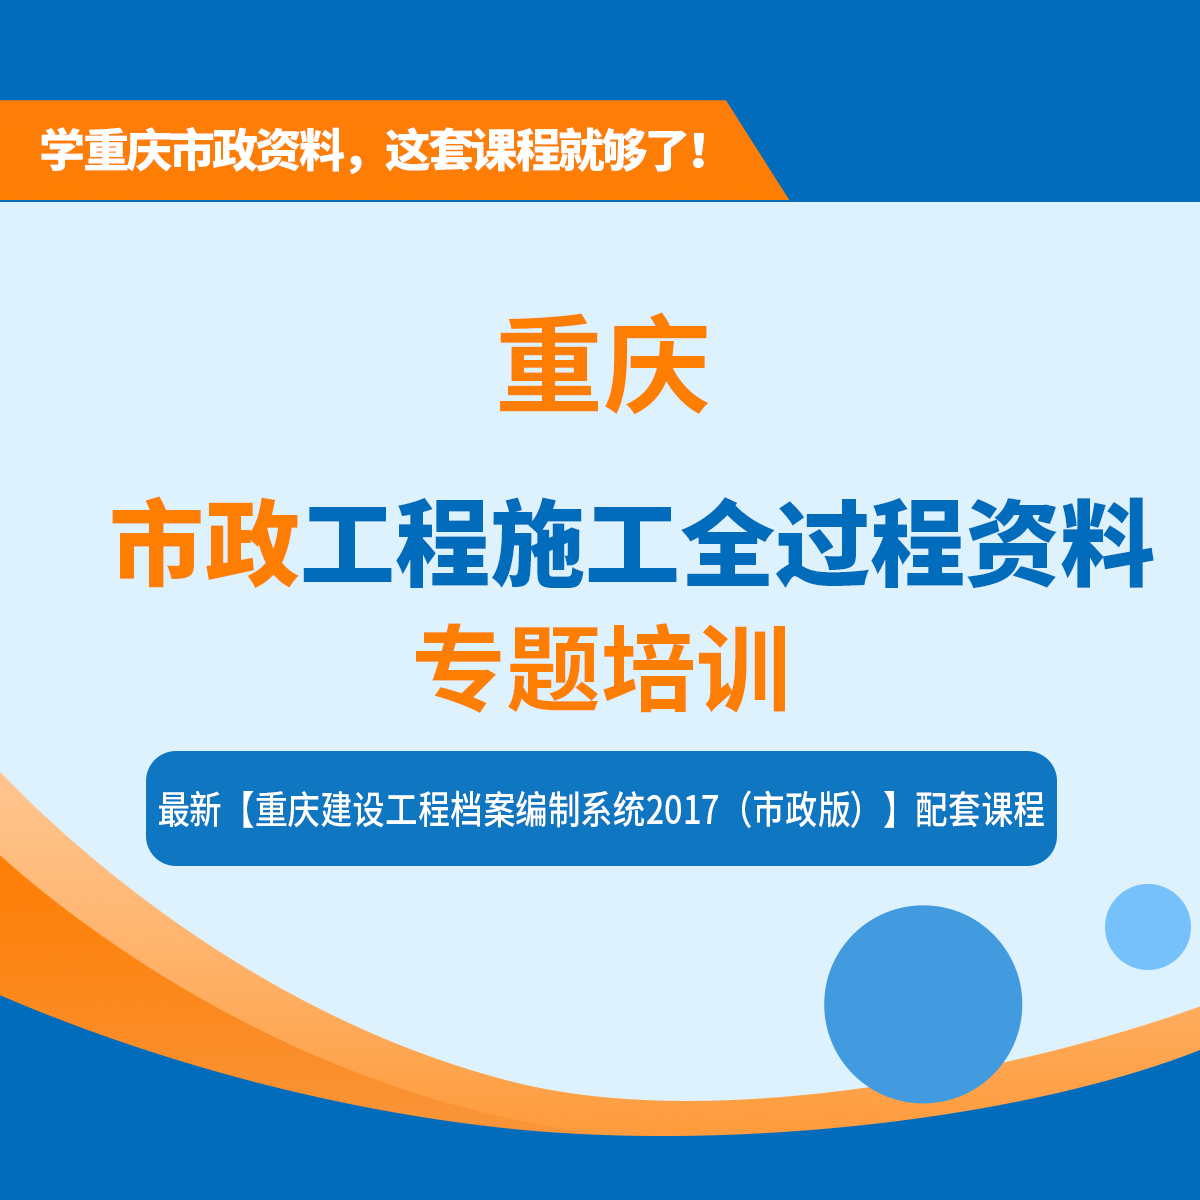 【课程】重庆市市政工程施工全过程资料表格填写、组卷、归档专题培训课程